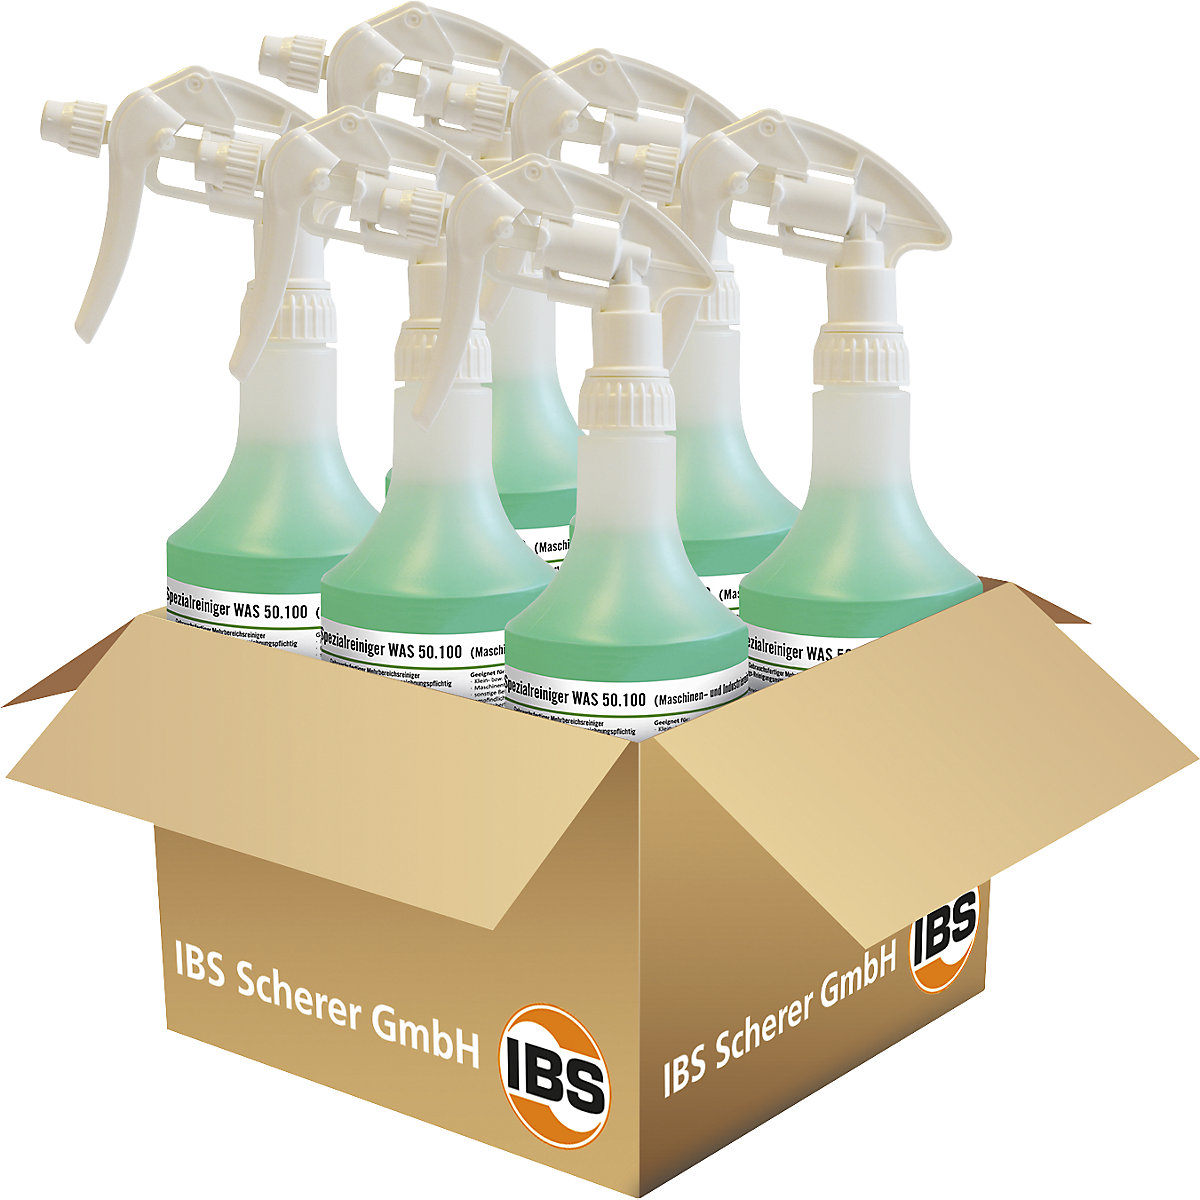 Machine/industrial cleaner WAS 50.100 – IBS Scherer